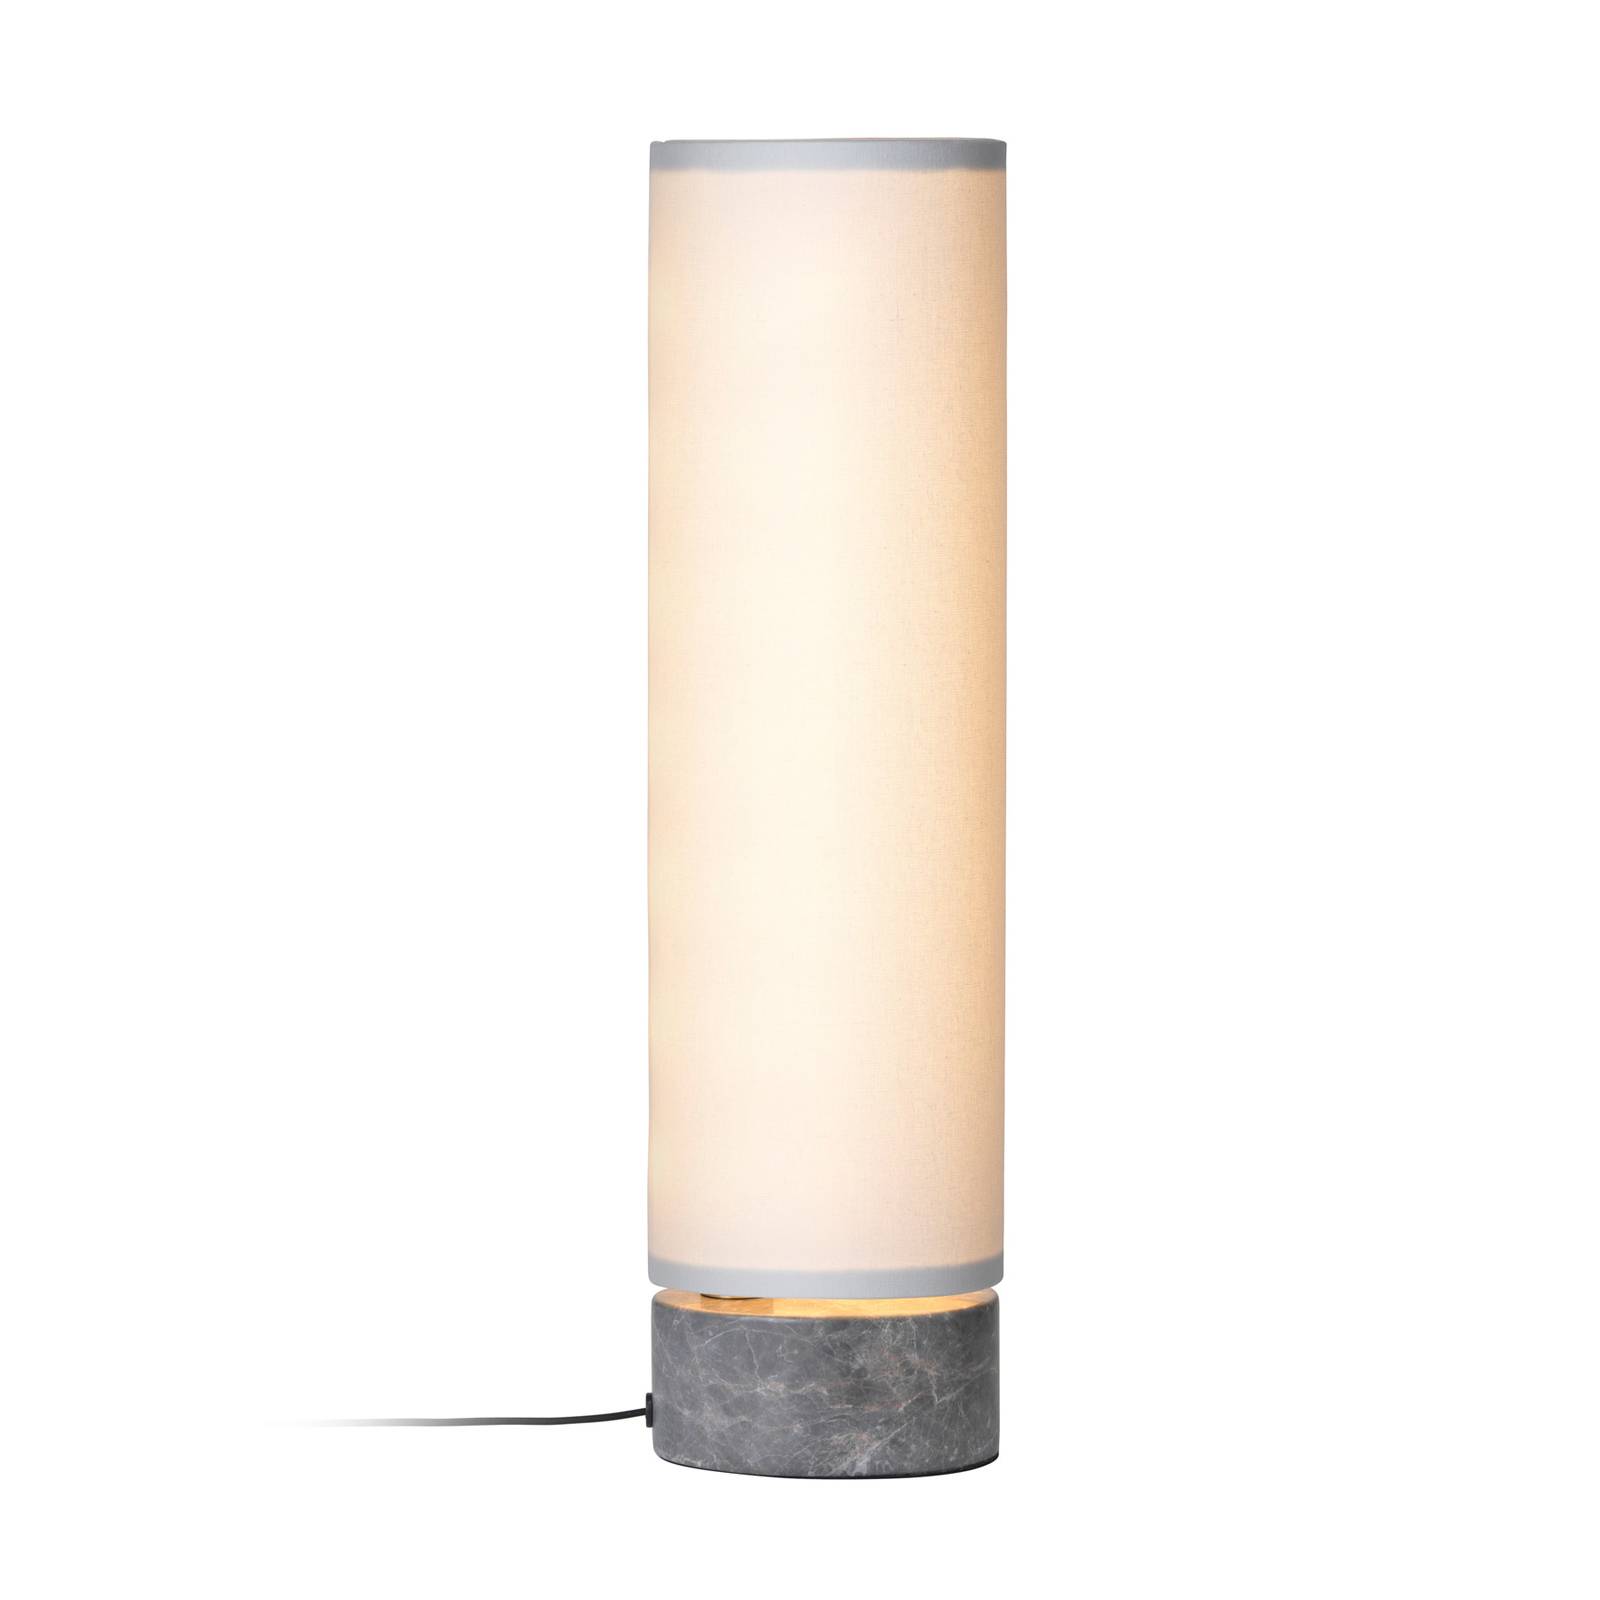 Image of GUBI Unbound lampe à poser LED blanche 5715015395526